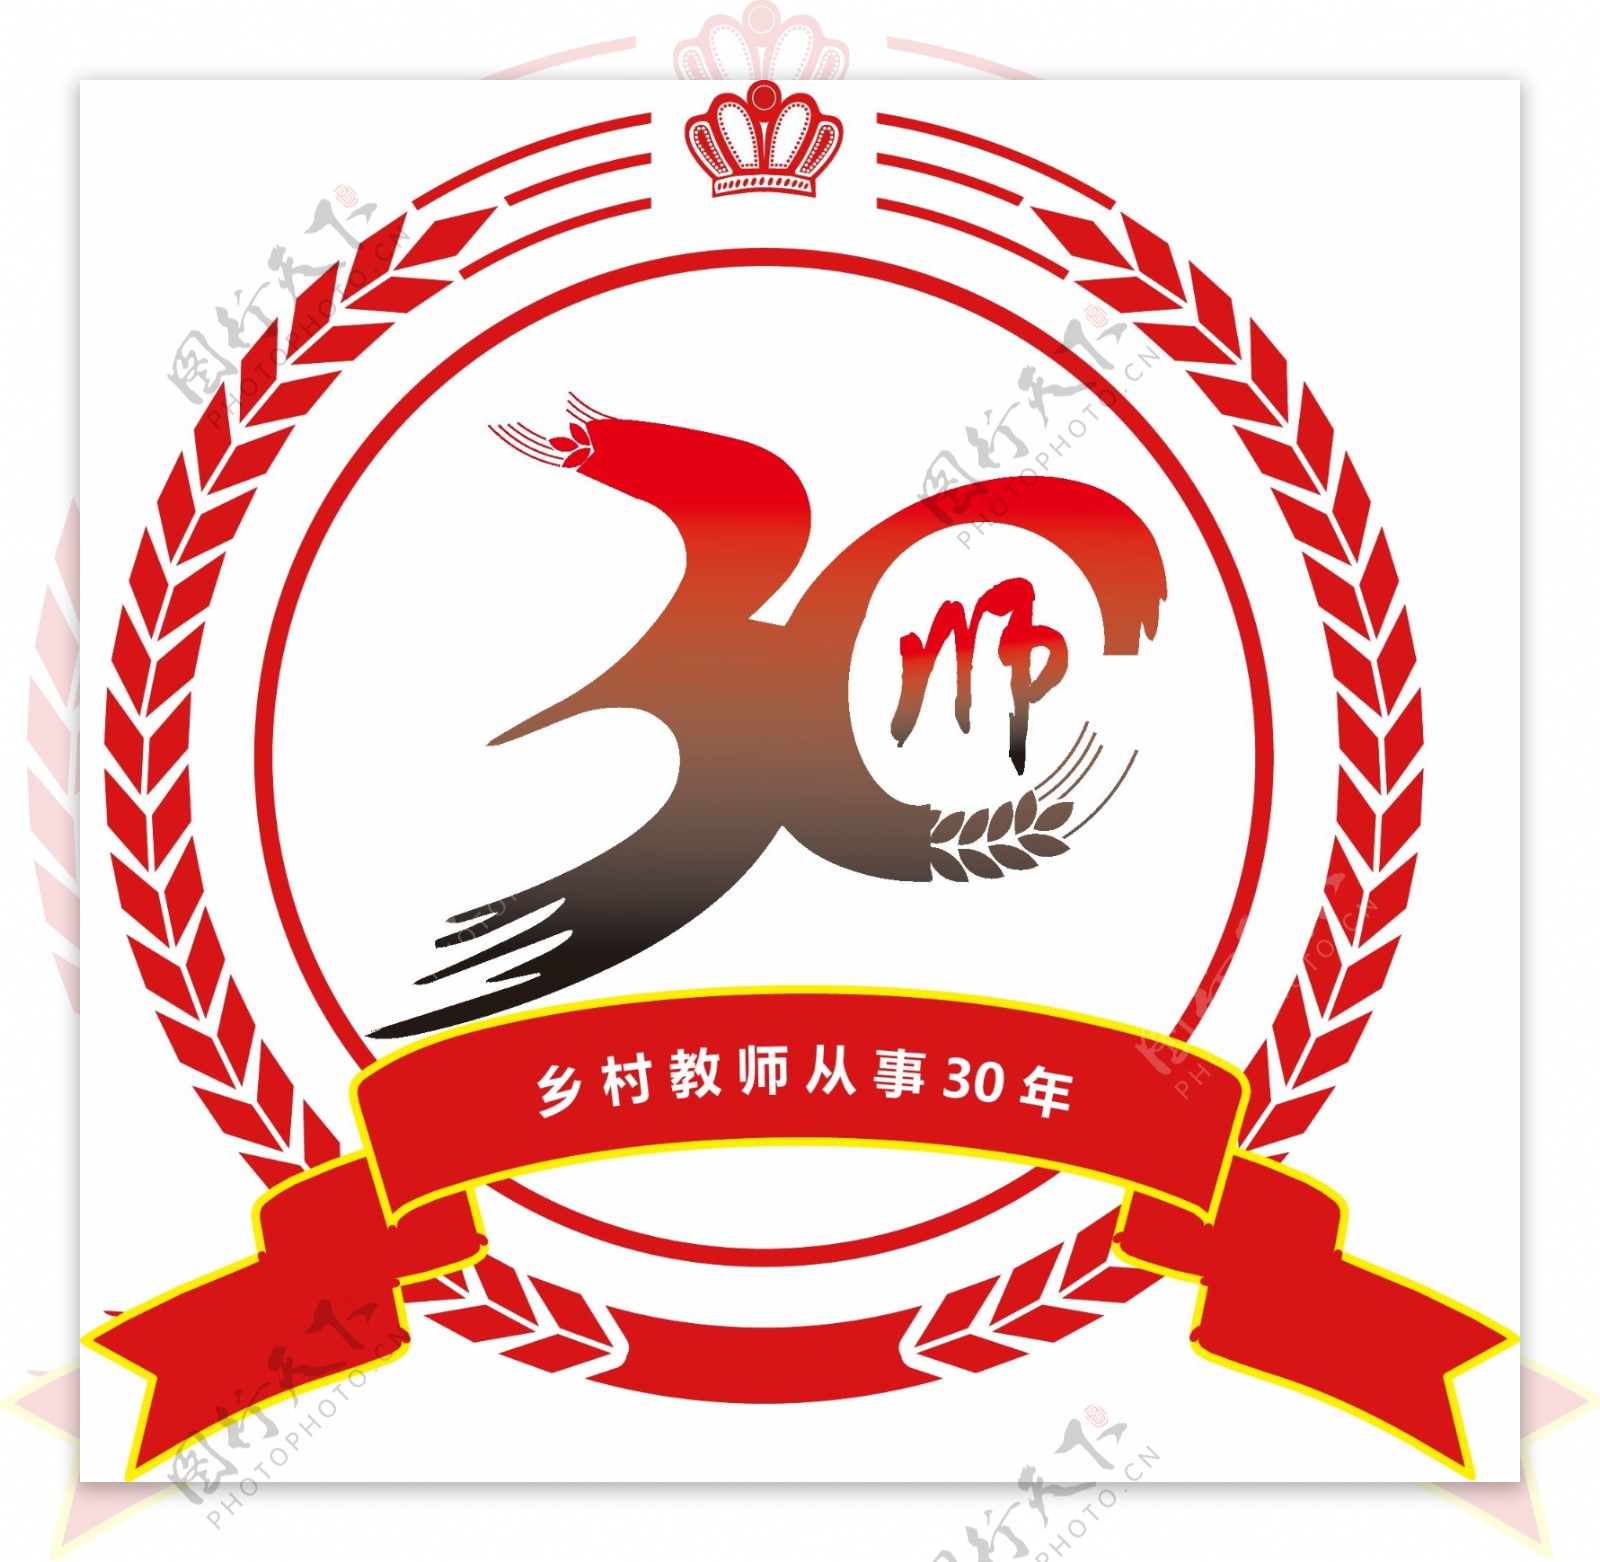 乡村教师30年logo设计